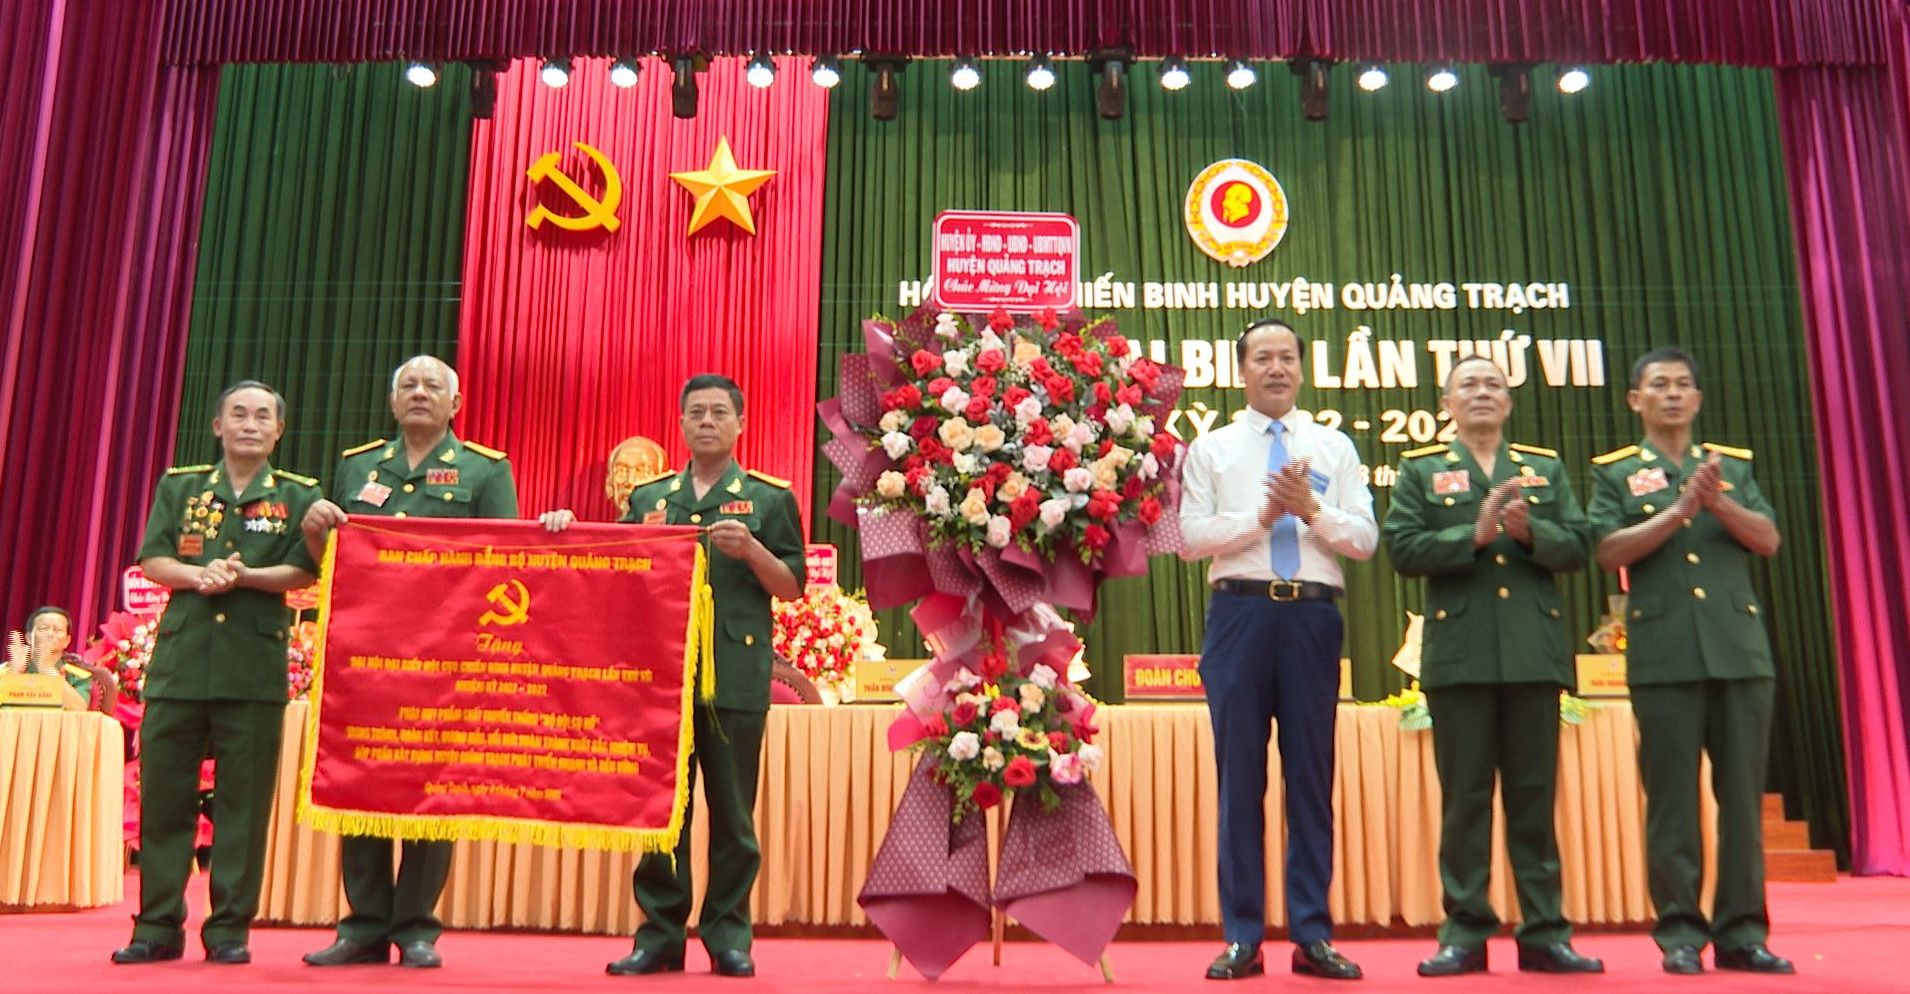 Đại hội đại biểu Hội Cựu chiến binh huyện Quảng Trạch nhiệm kỳ 2022-2027